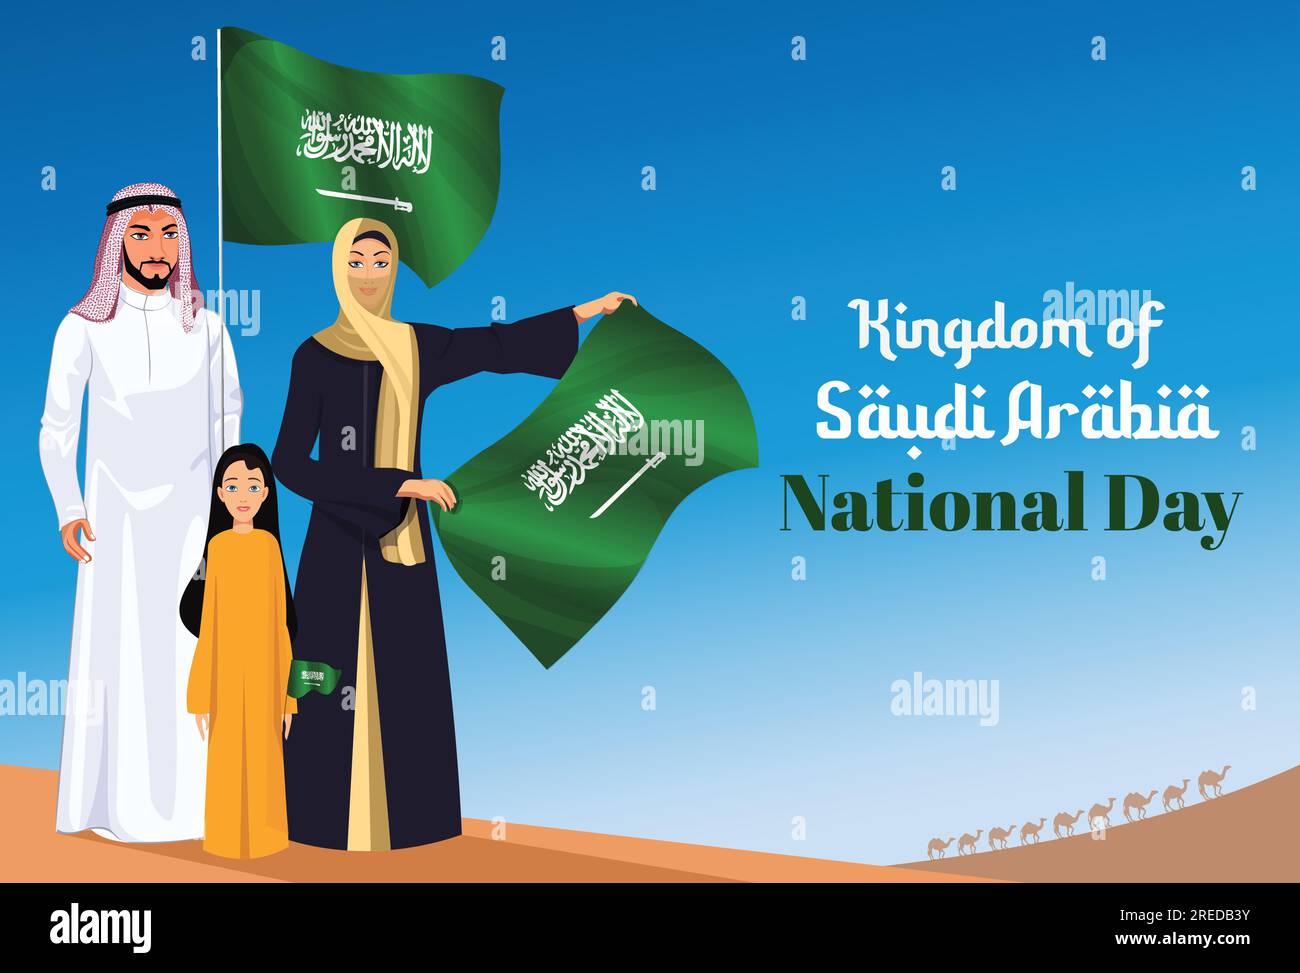 Saudi-Arabiens Nationalfeiertag, arabische Familien feiern. Arabische Frauen, die die Flagge des Königreichs Saudi-Arabien halten. Tag der Nationalflagge der KSA Stock Vektor